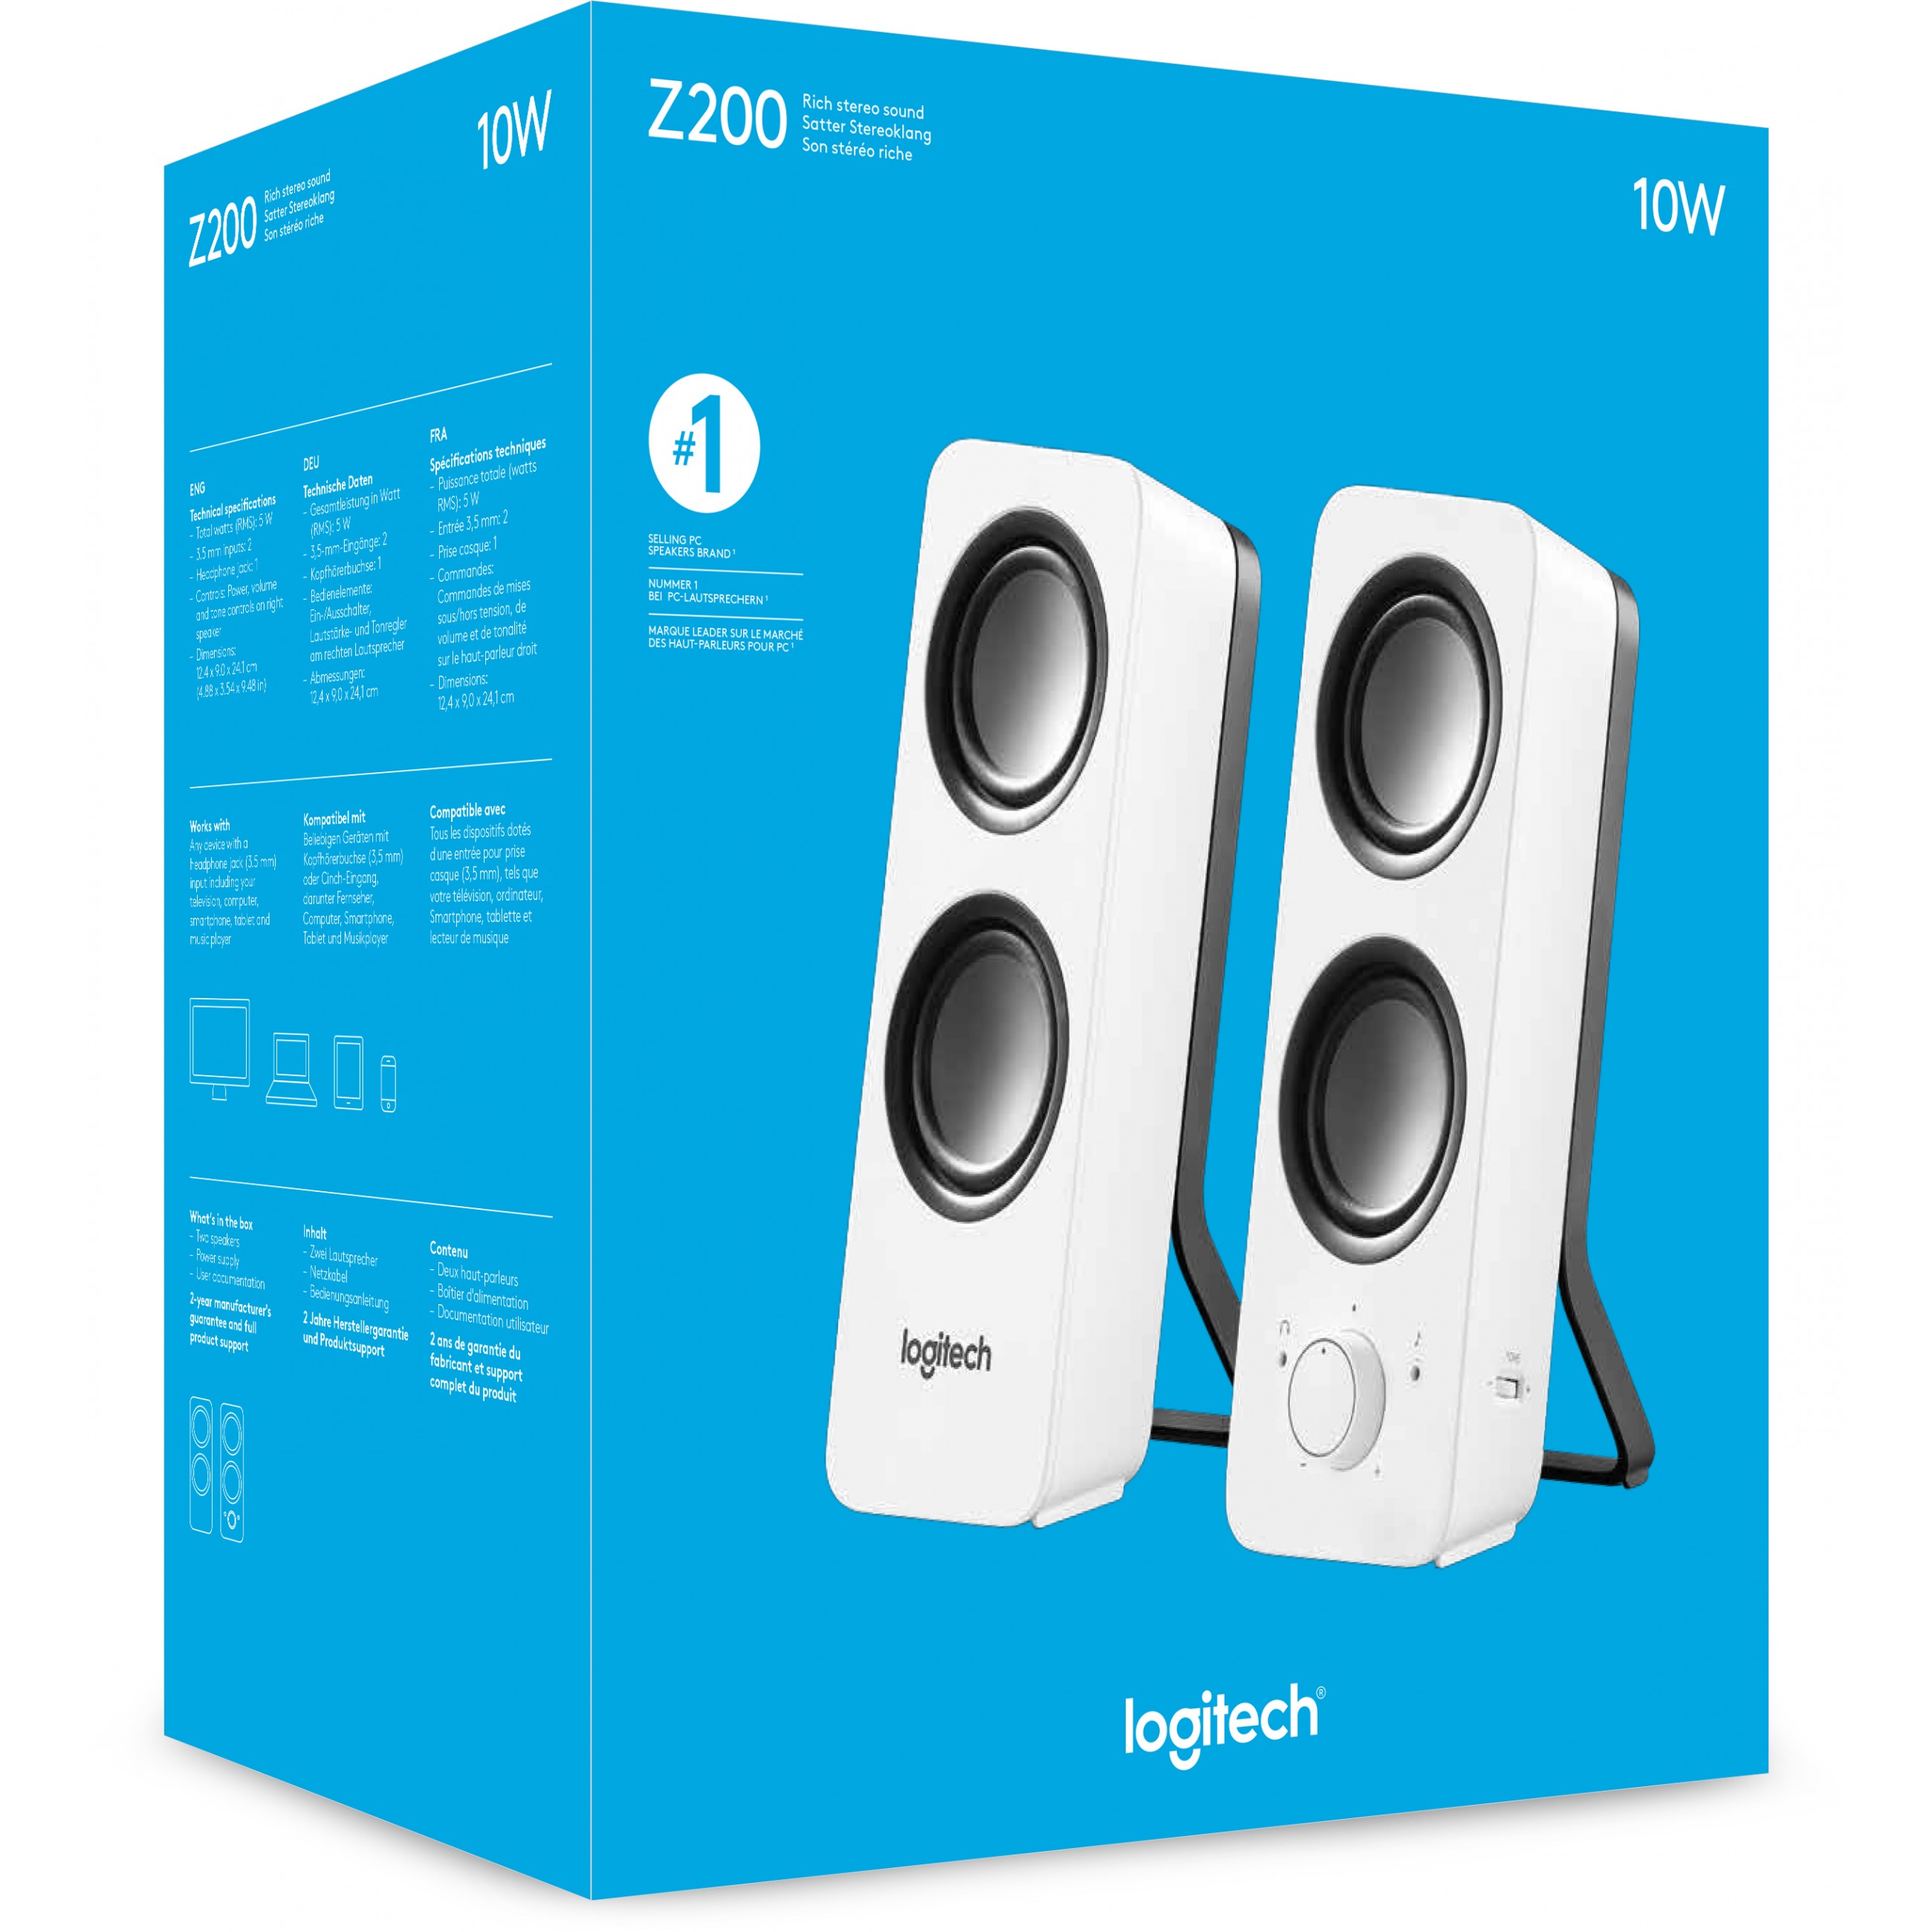 Logitech Z200 Rich Stereo Sound Weiß Kabelgebunden 10 W